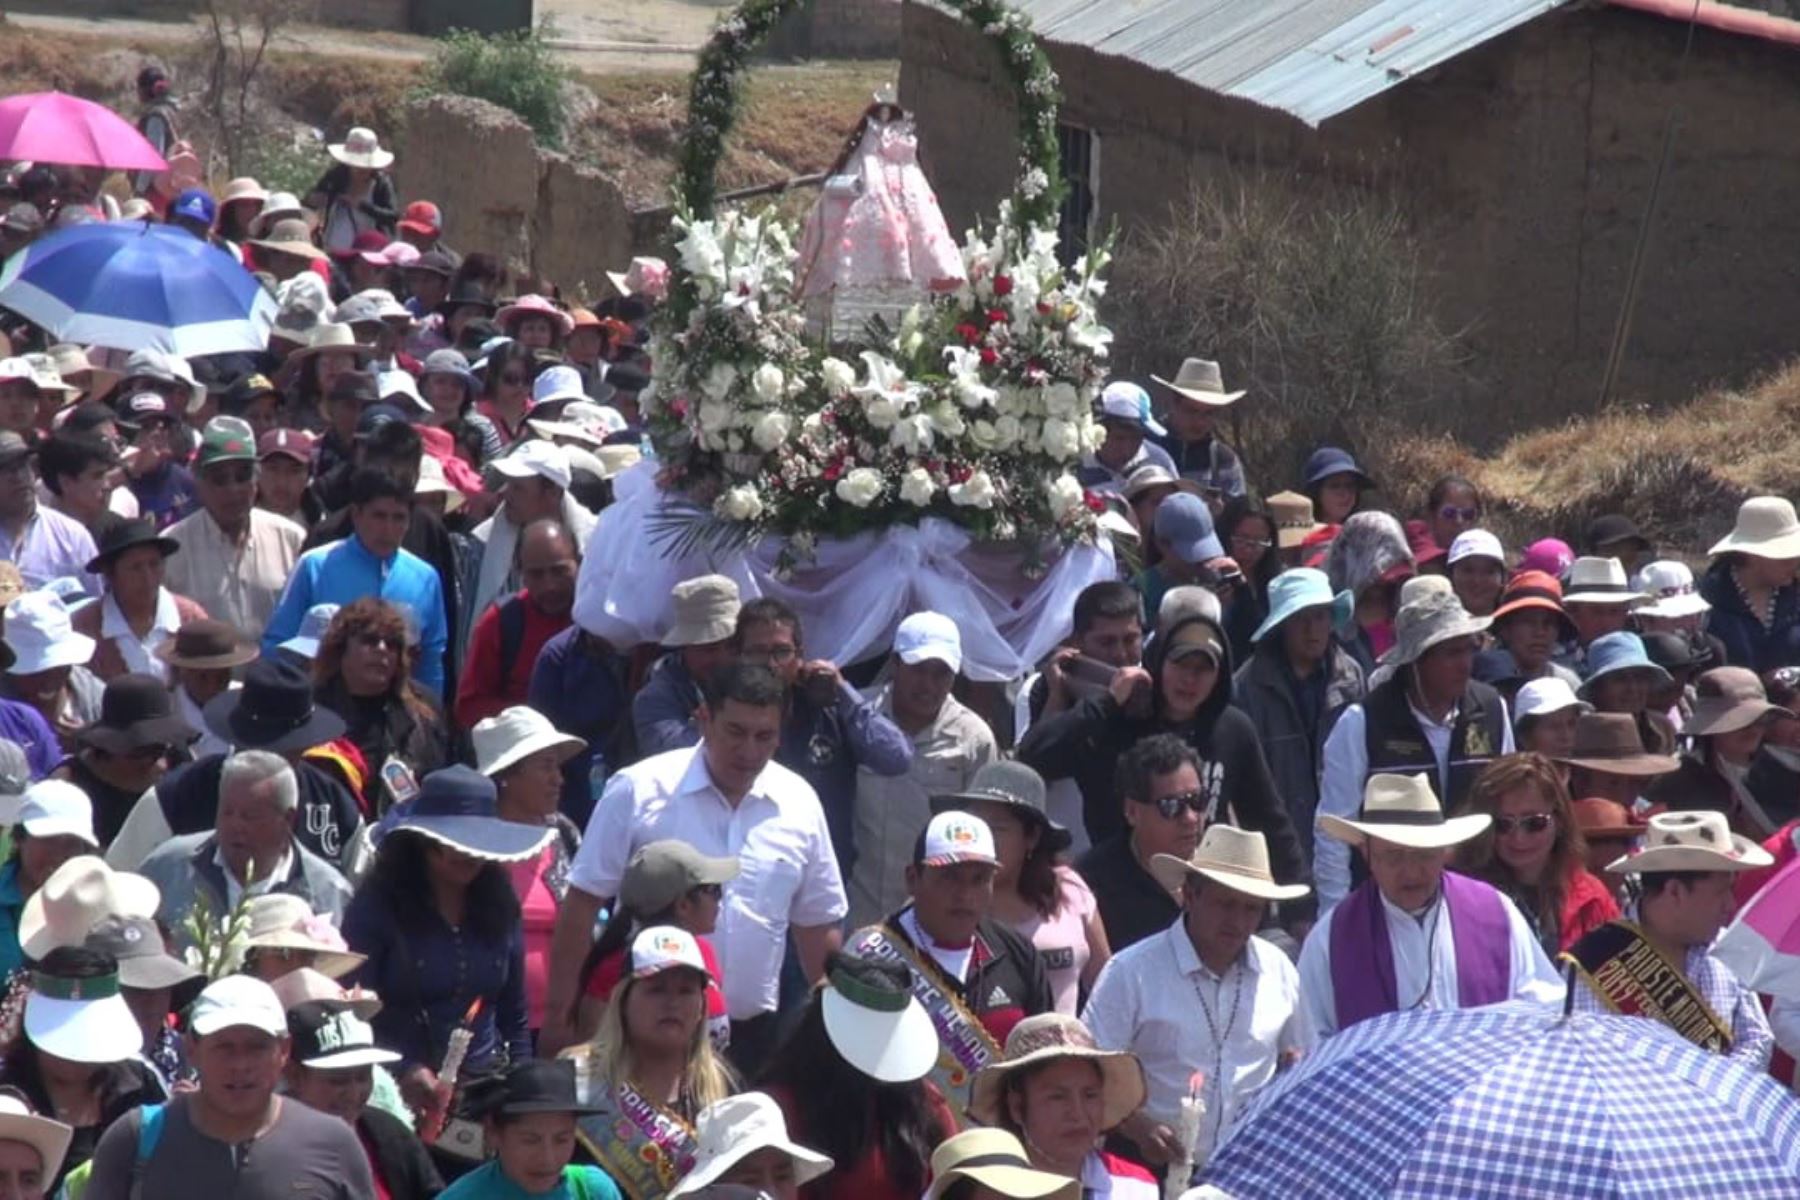 La festividad a la Virgen de Cocharcas fue declarada en 2014 Patrimonio Cultural de la Nación, y los días centrales de fiesta son el 8 y 9 de setiembre. Foto: ANDINA/Pedro Tinoco